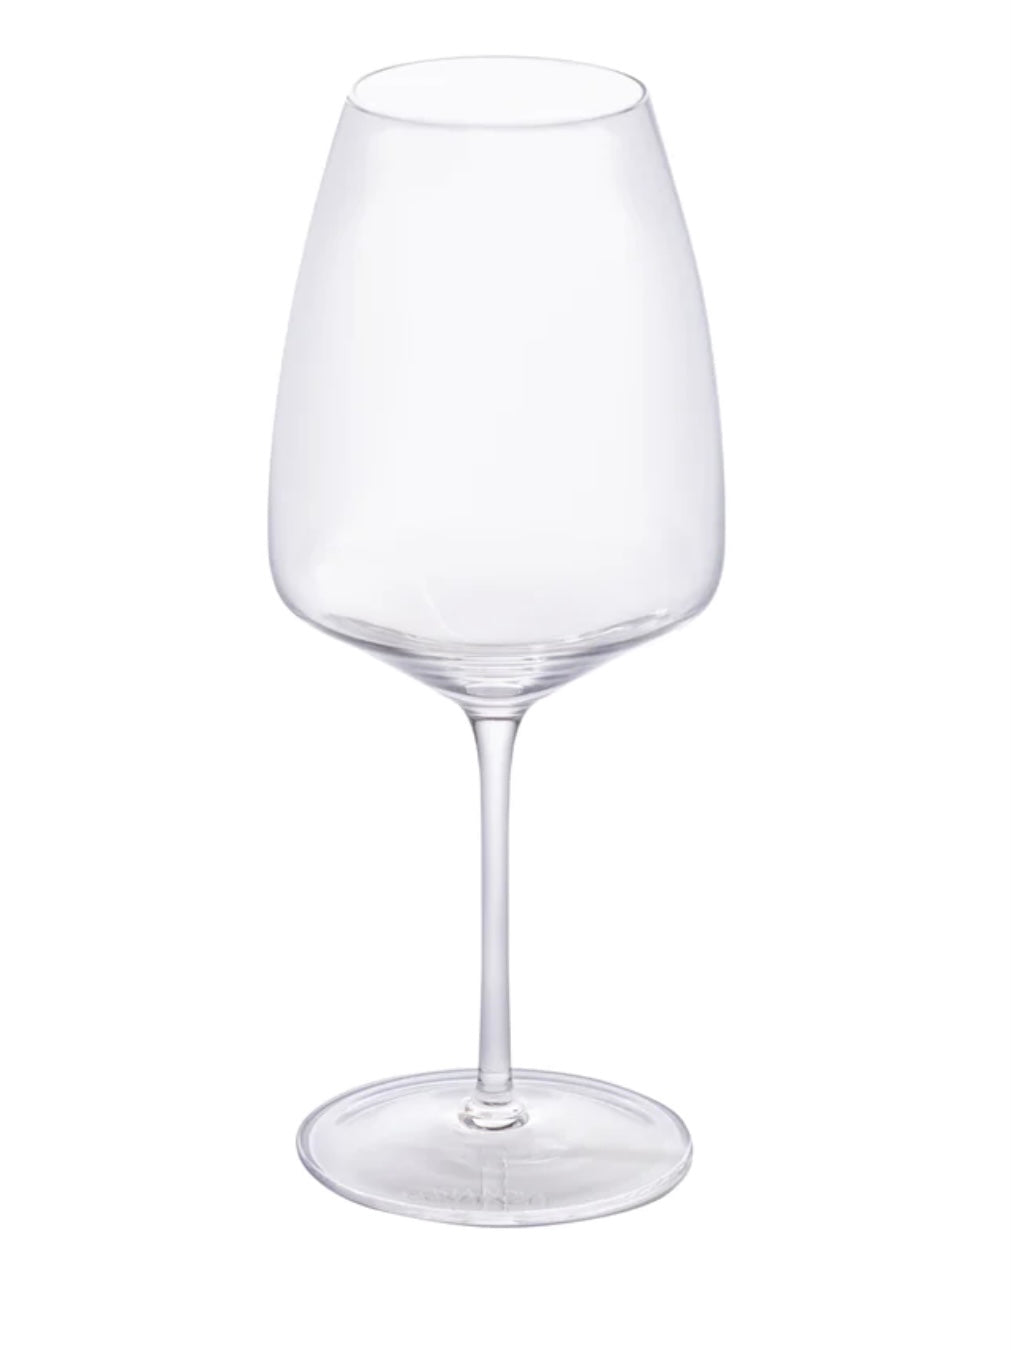 Costa Nova Vite Bordeaux Wine Glass